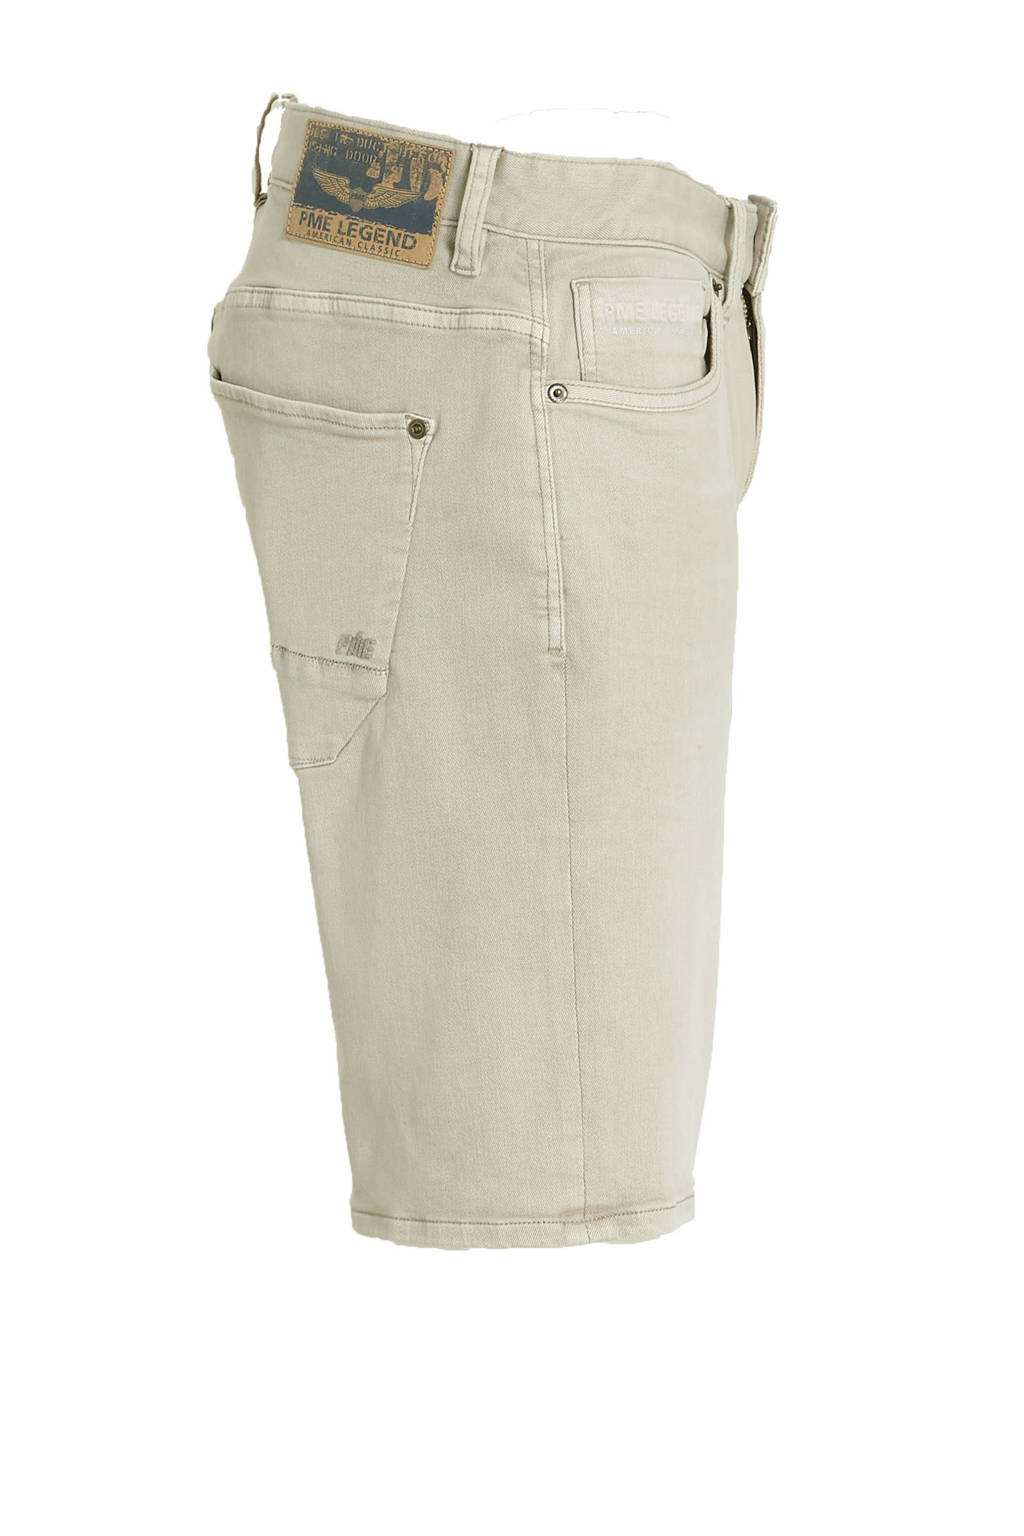 afgewerkt Madeliefje Verleden PME Legend regular fit jeans short Nightflight beige – Harry's Webshop